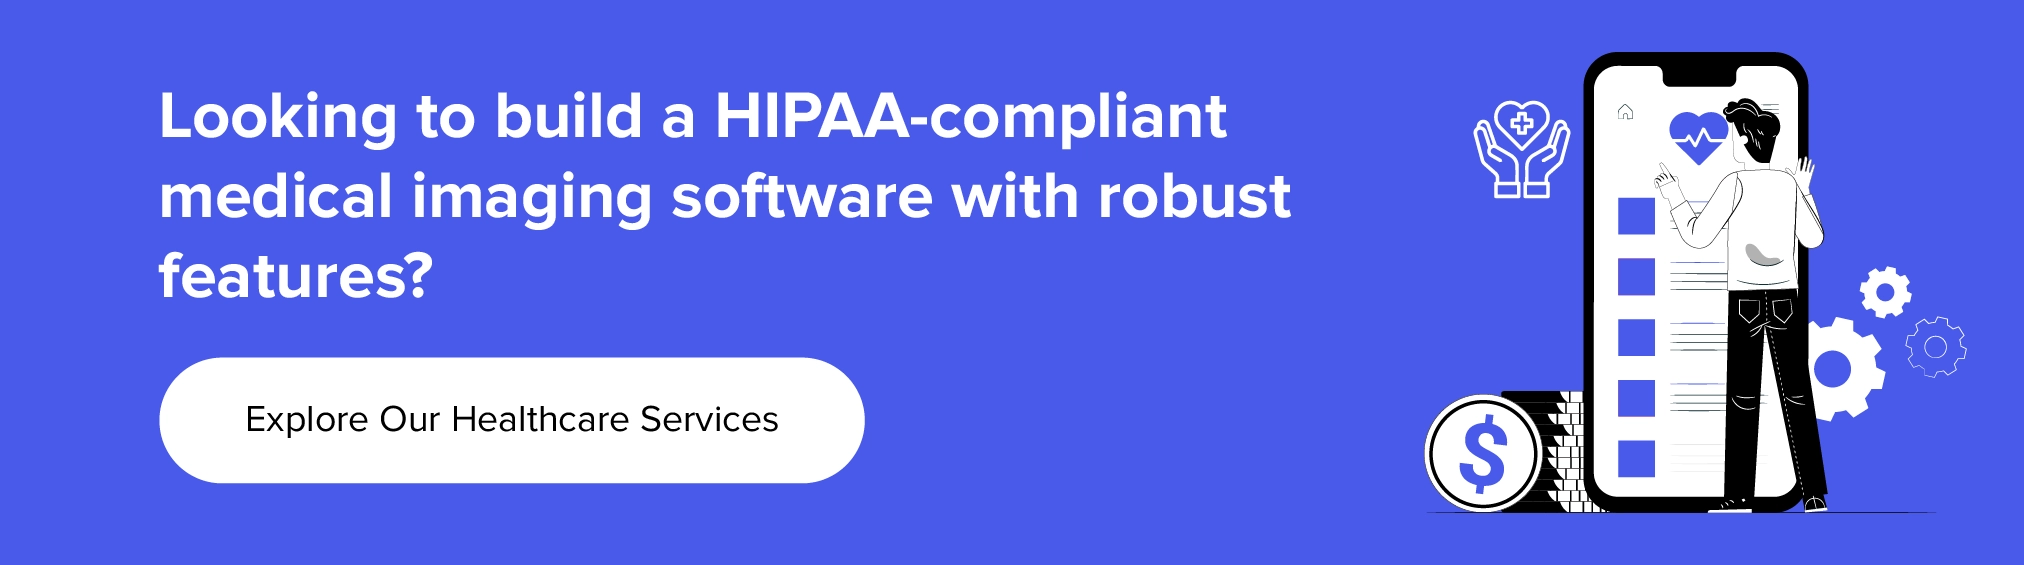 współpracuj z nami przy tworzeniu oprogramowania do obrazowania medycznego zgodnego z ustawą HIPAA